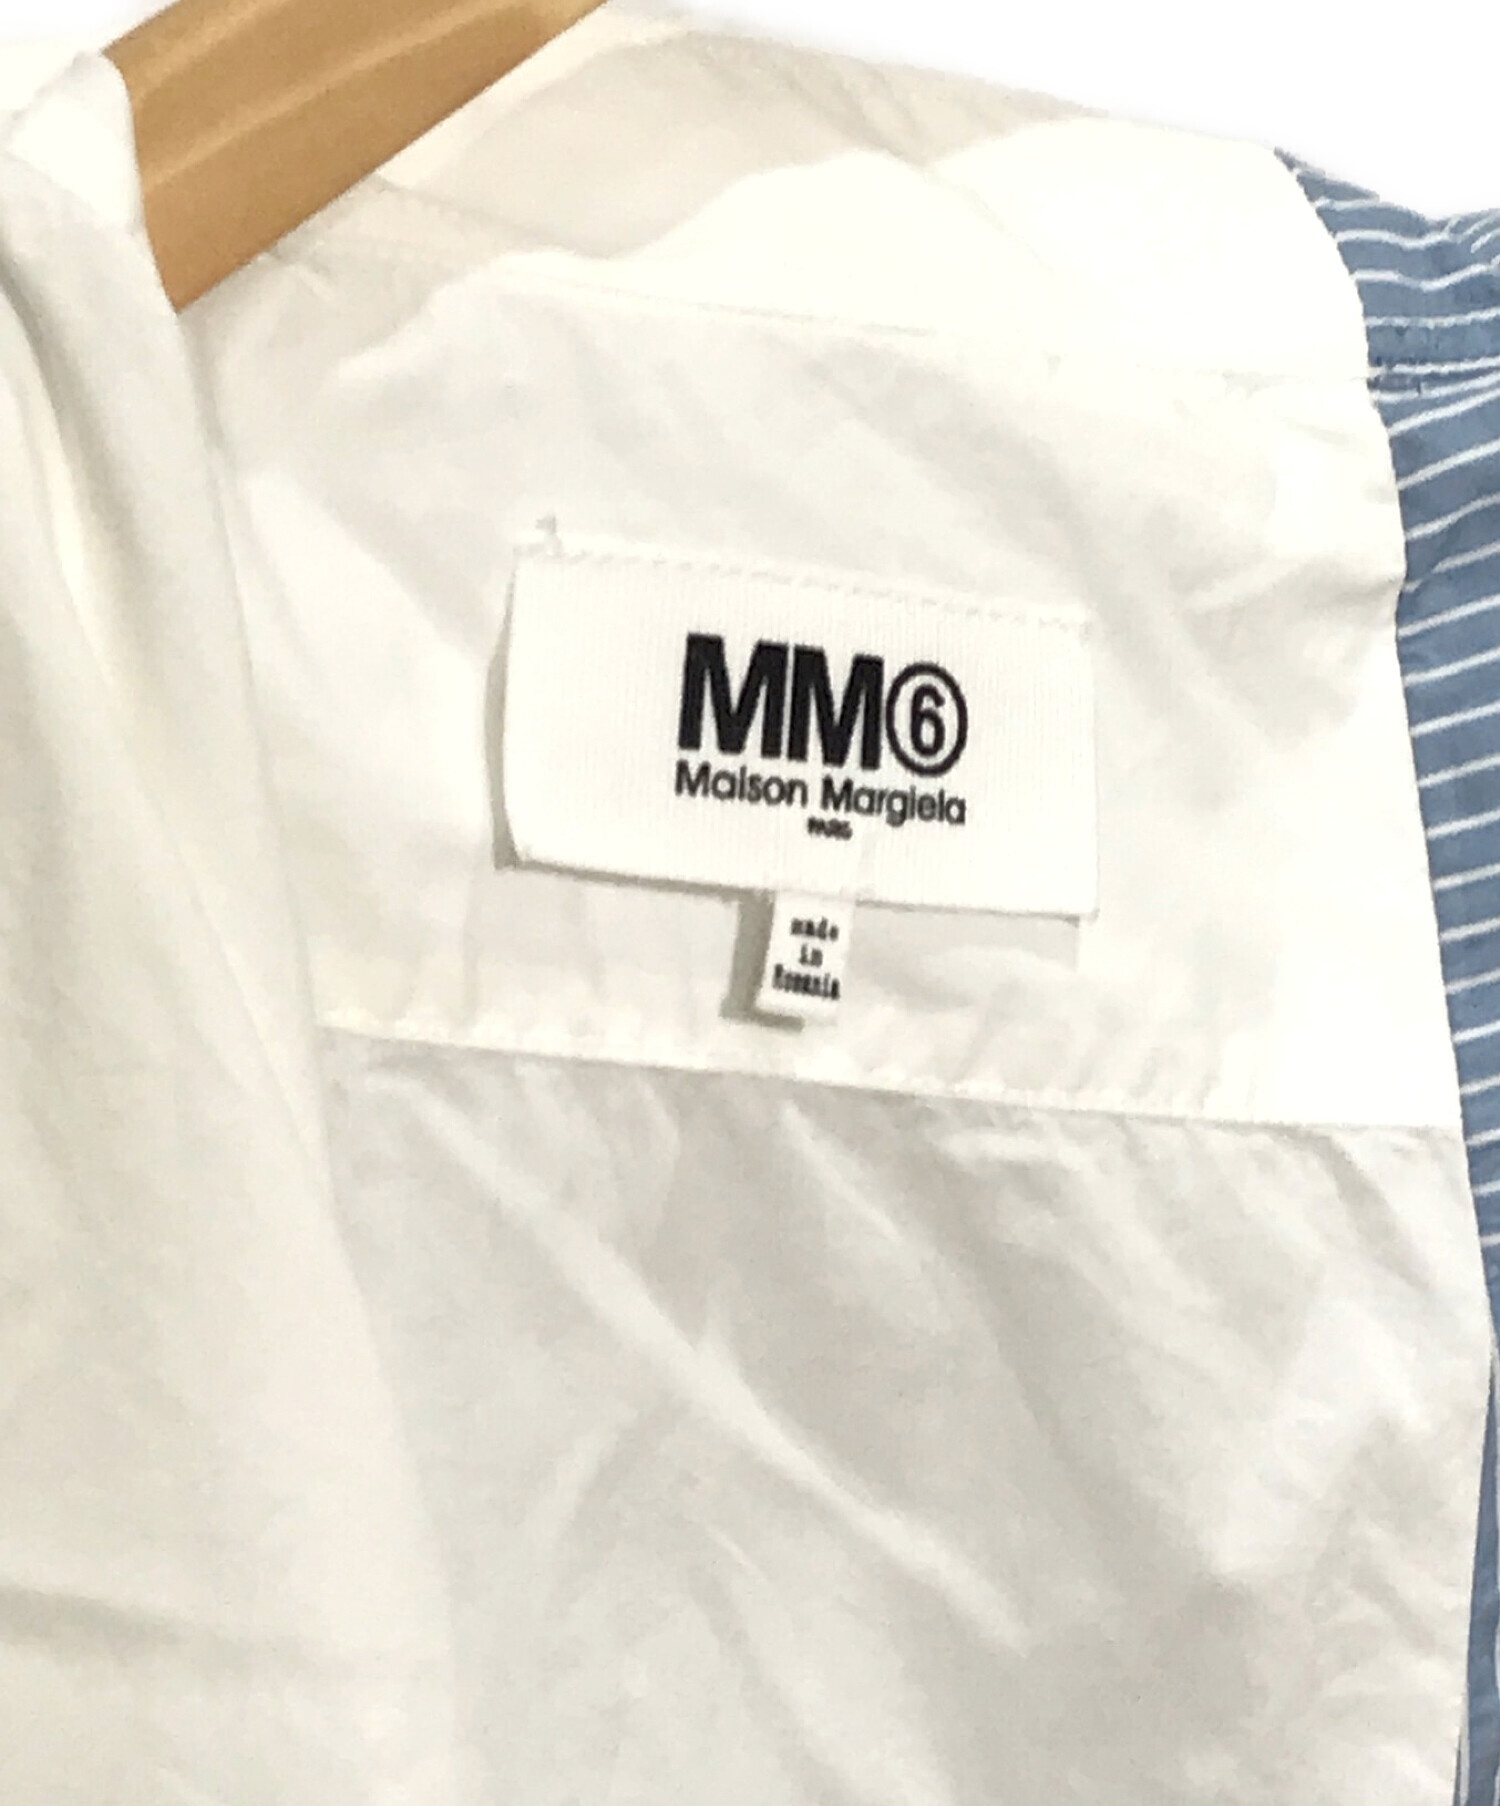 MM6 Maison Margiela (エムエムシックス メゾンマルジェラ) ストライプアシンメトリーロングシャツ ブルー サイズ:SIZE 40